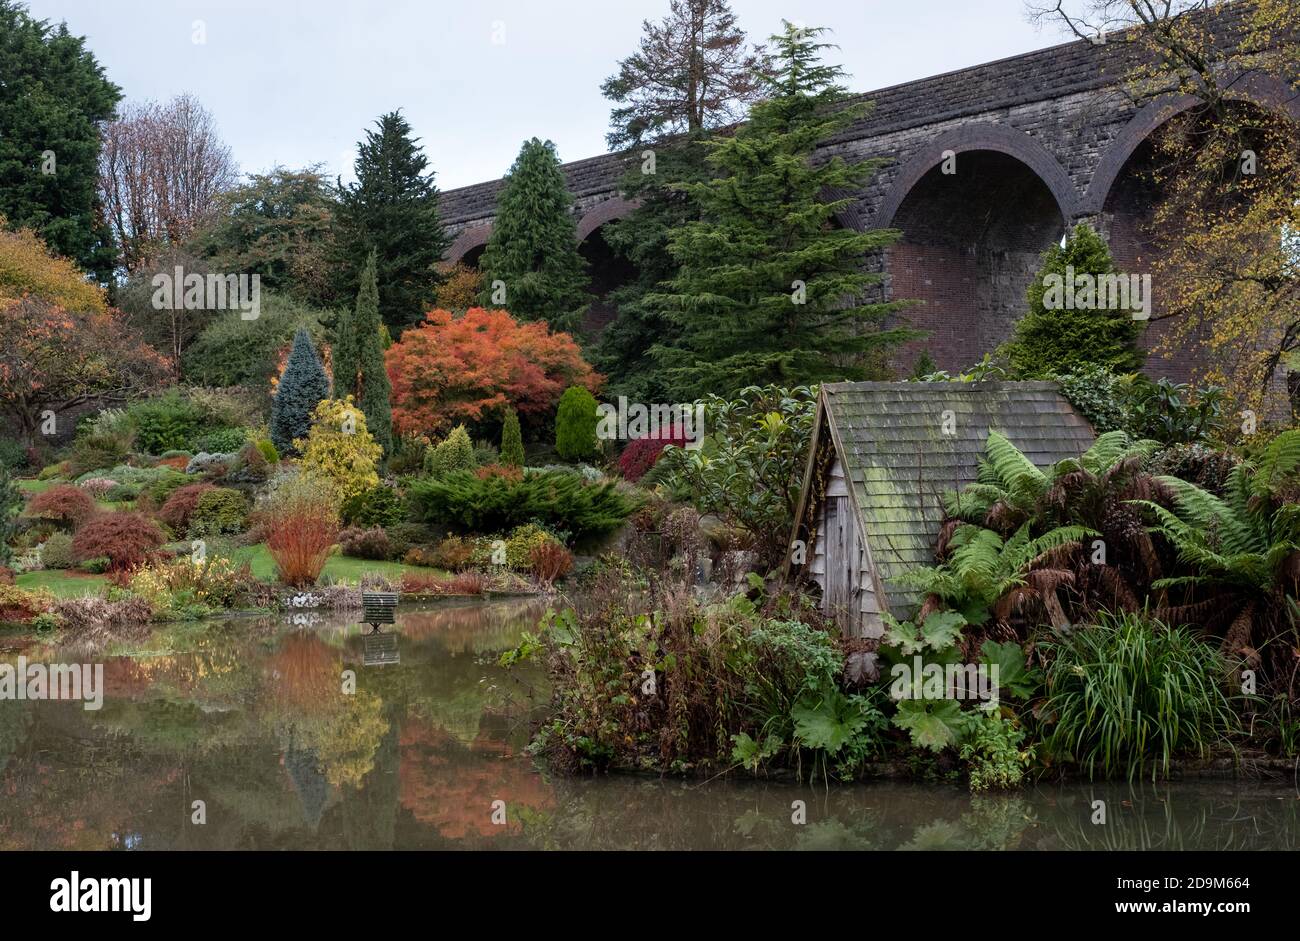 Kilver court Gardens, jardin au bord du lac historique situé sous le viaduc victorien de Charlton, photographié en automne avec des feuilles qui se transforment en couleur. Banque D'Images